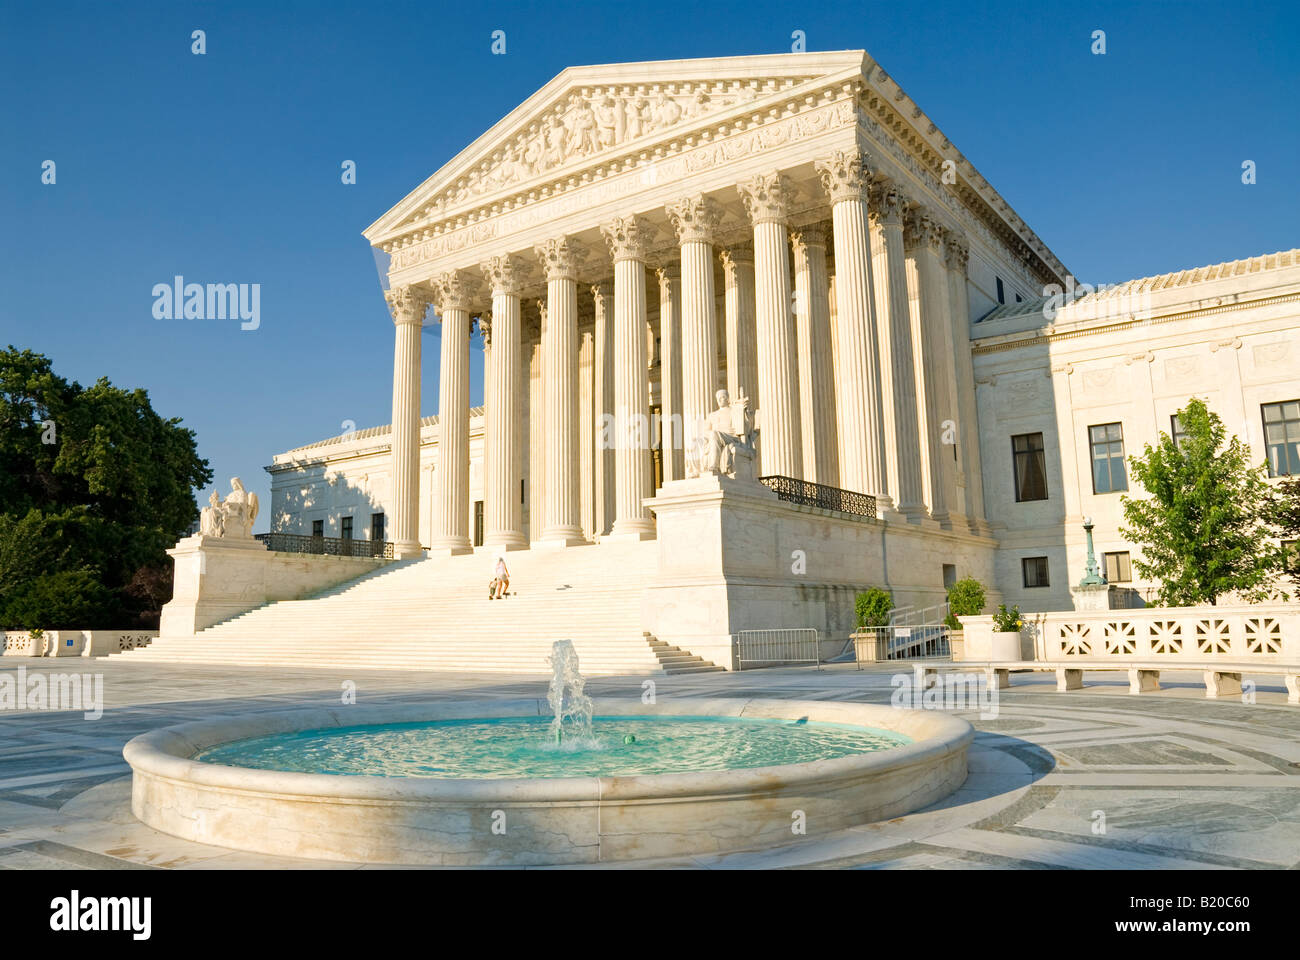 WASHINGTON DC, USA - auf der Vorderseite des Gebäudes, nach Westen, der Oberste Gerichtshof der USA auf dem Capitol Hill in Washington DC. Stockfoto